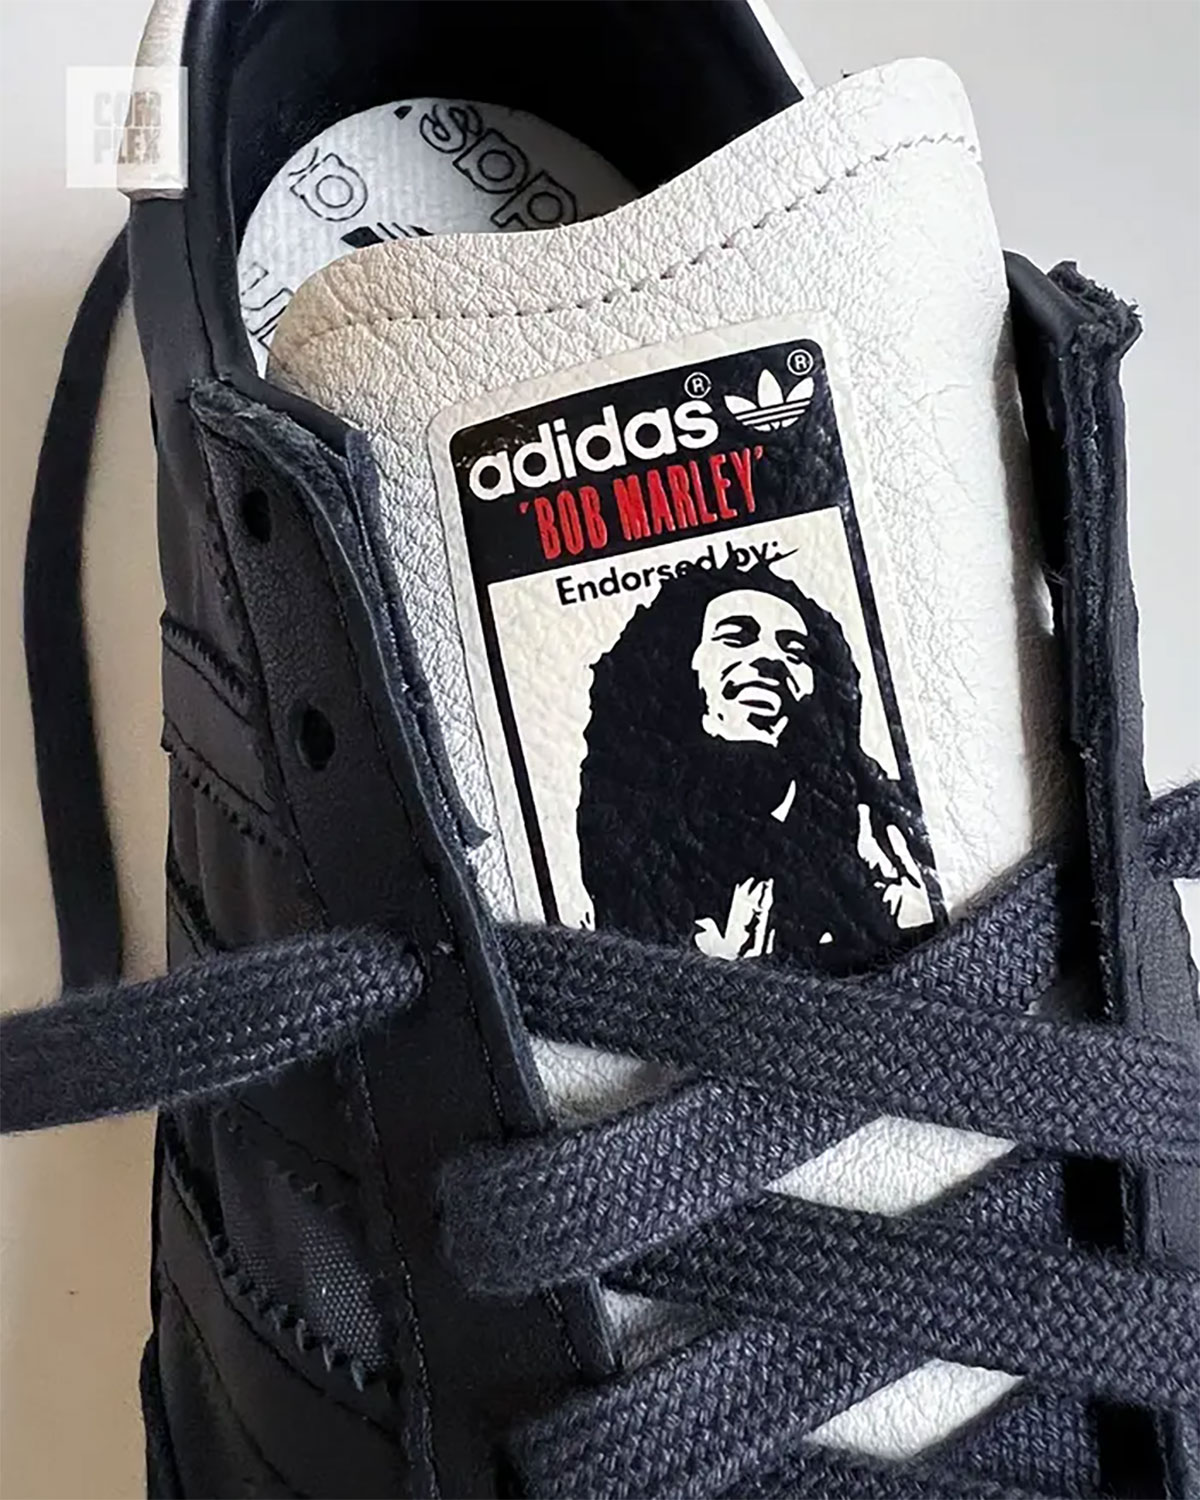 CerbeShops | Bob Marley adidas SL72 Release Date | adidas lx24 vs tx24 ...